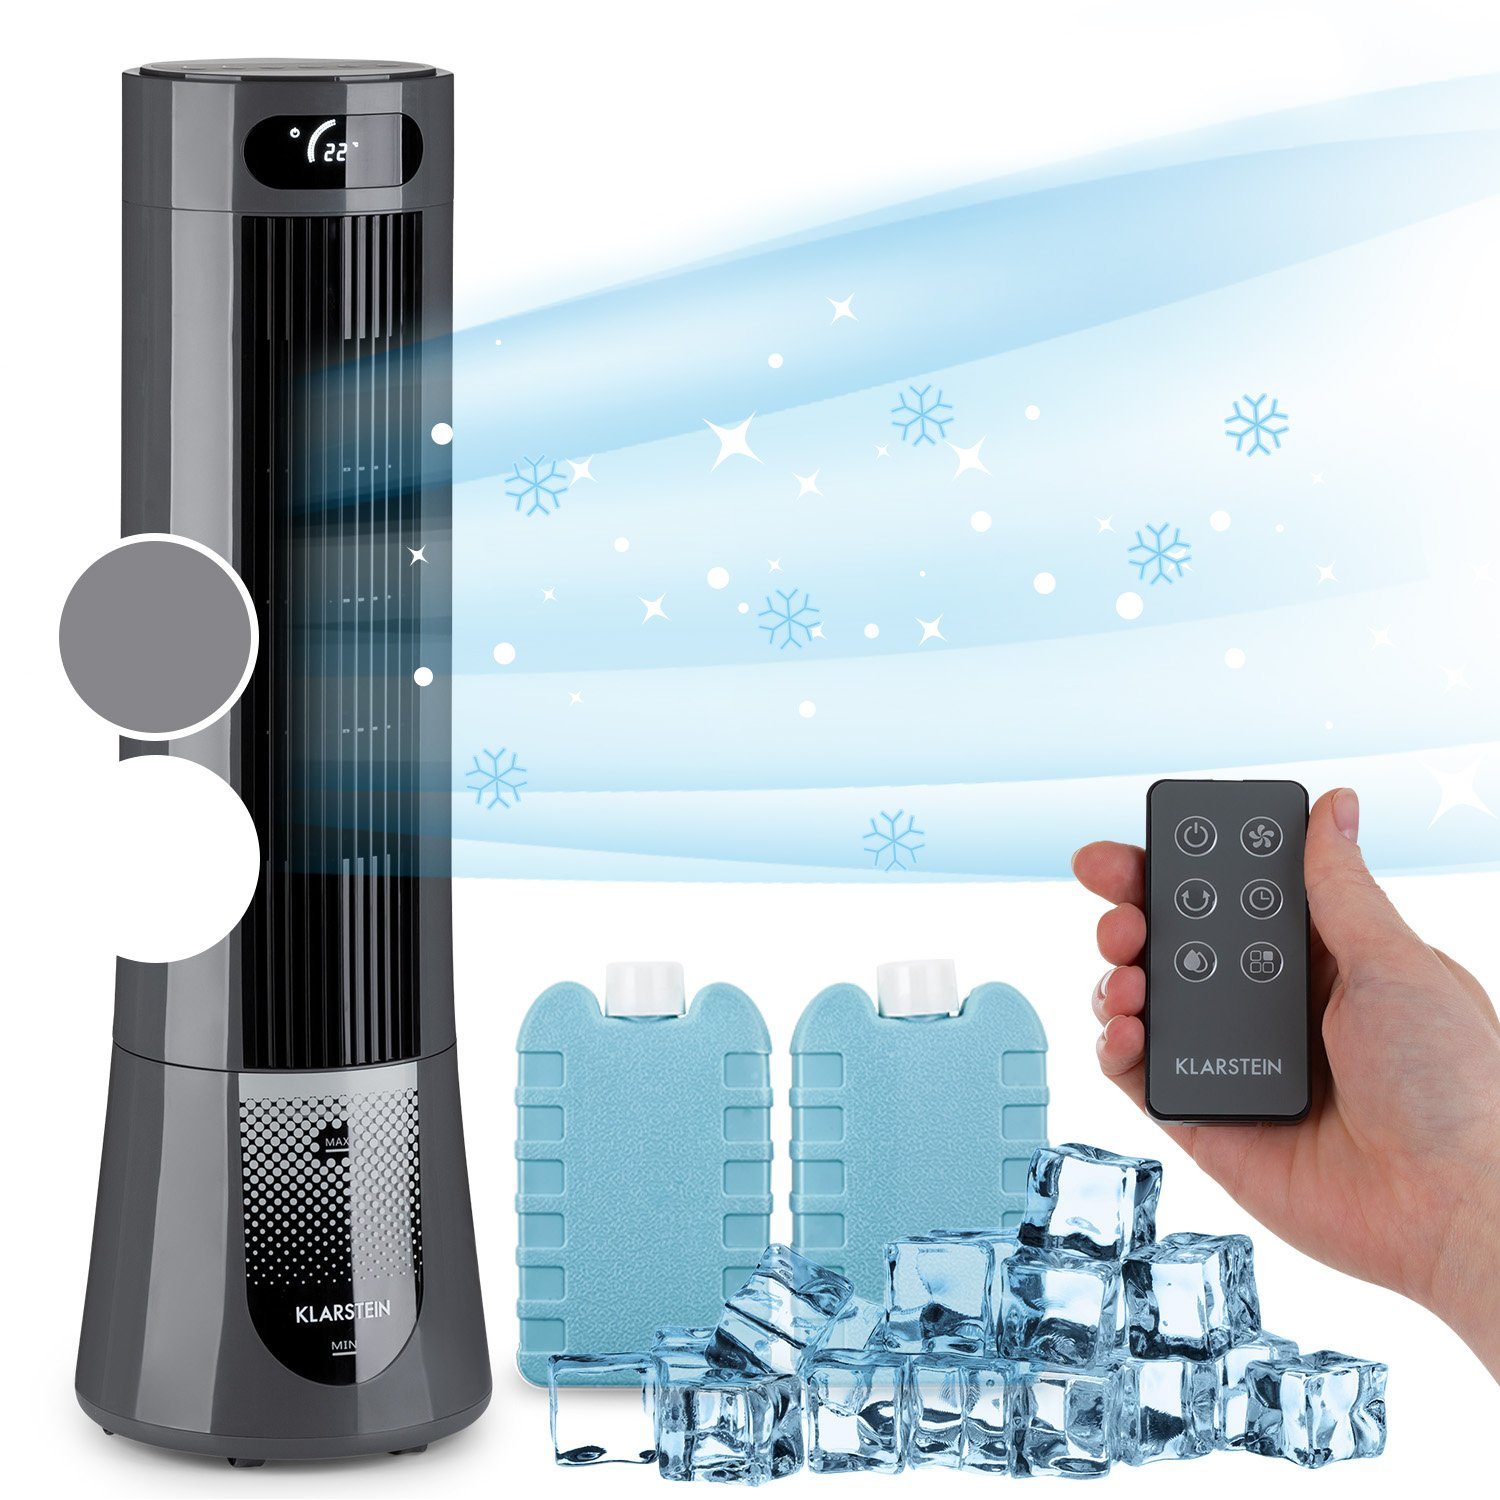 Ventilatorkombigerät Wasserkühlung mit Frost mobil & Luftkühler, Abluftschlauch Klimagerät Eis Skyscraper Klarstein ohne